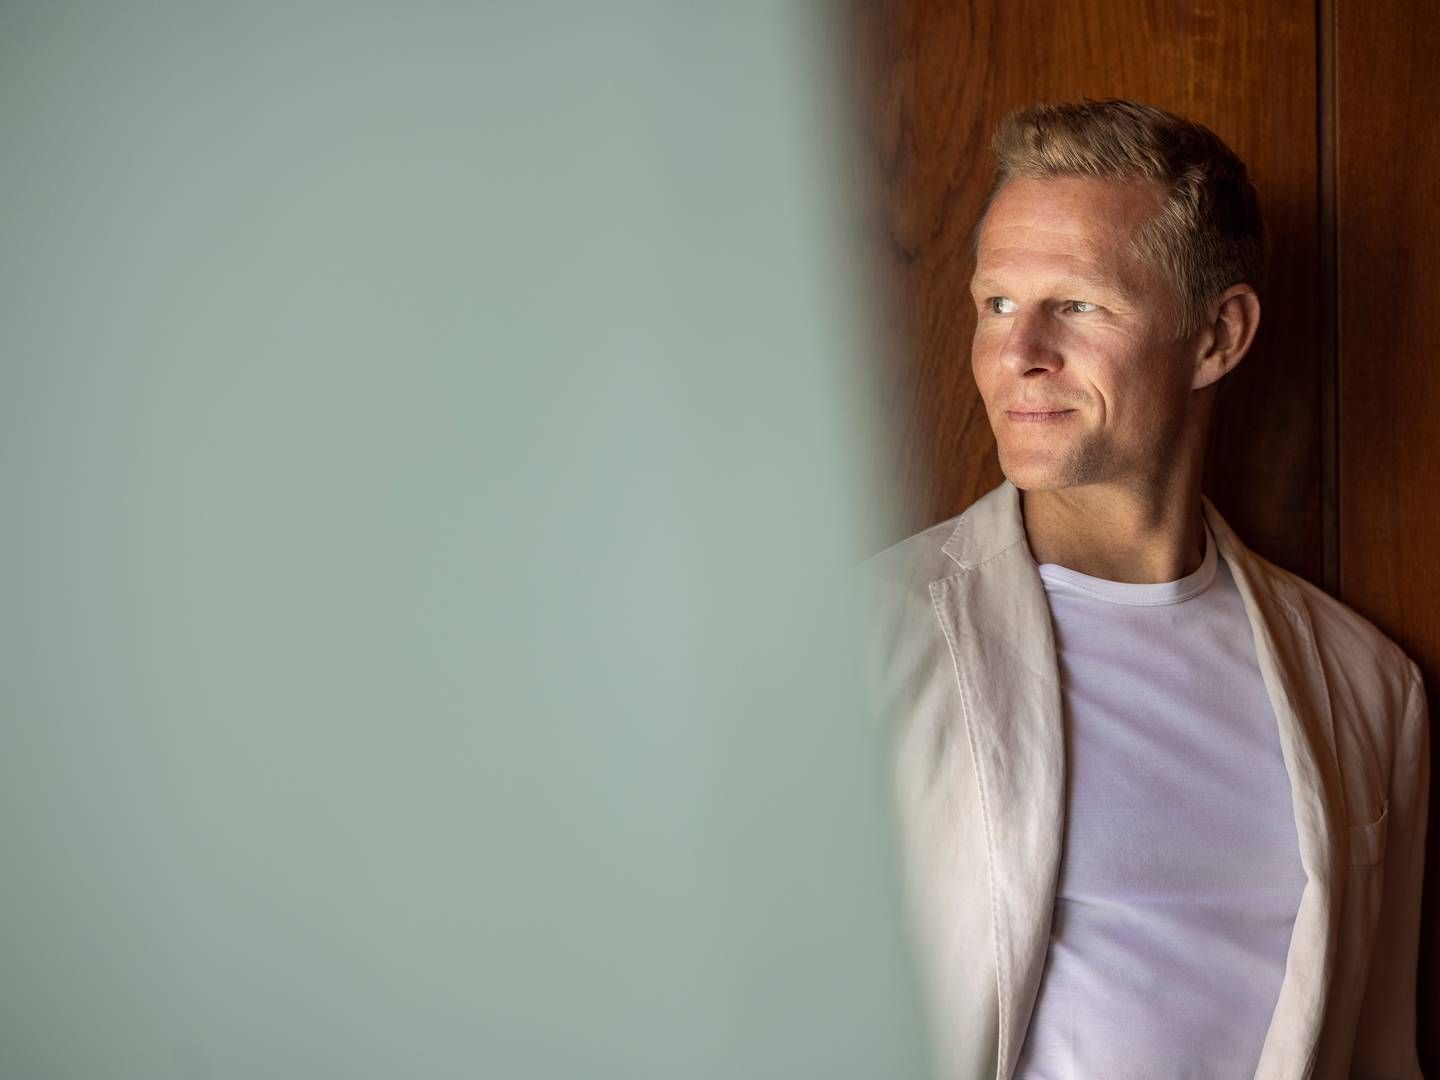 Bjarke Mikkelsen er efter 17 år i udlandet vendt hjem til Danmark for at tage hul på en ny erhvervsudfordring. | Foto: PR